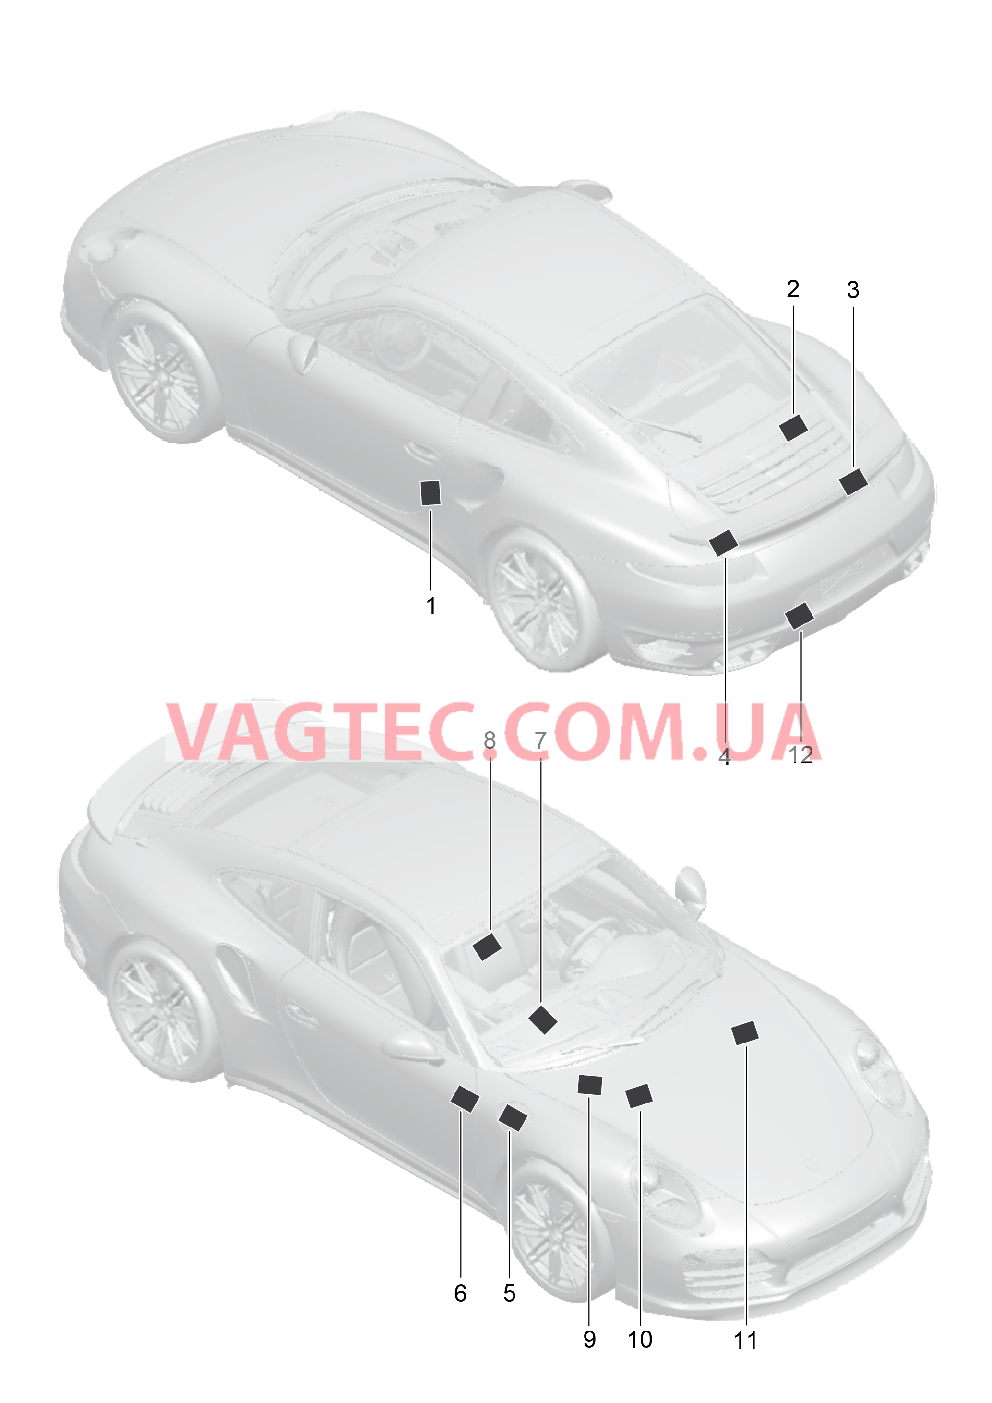 001-005 Наклейки для PORSCHE Porsche991Turbo 2014-2017USA